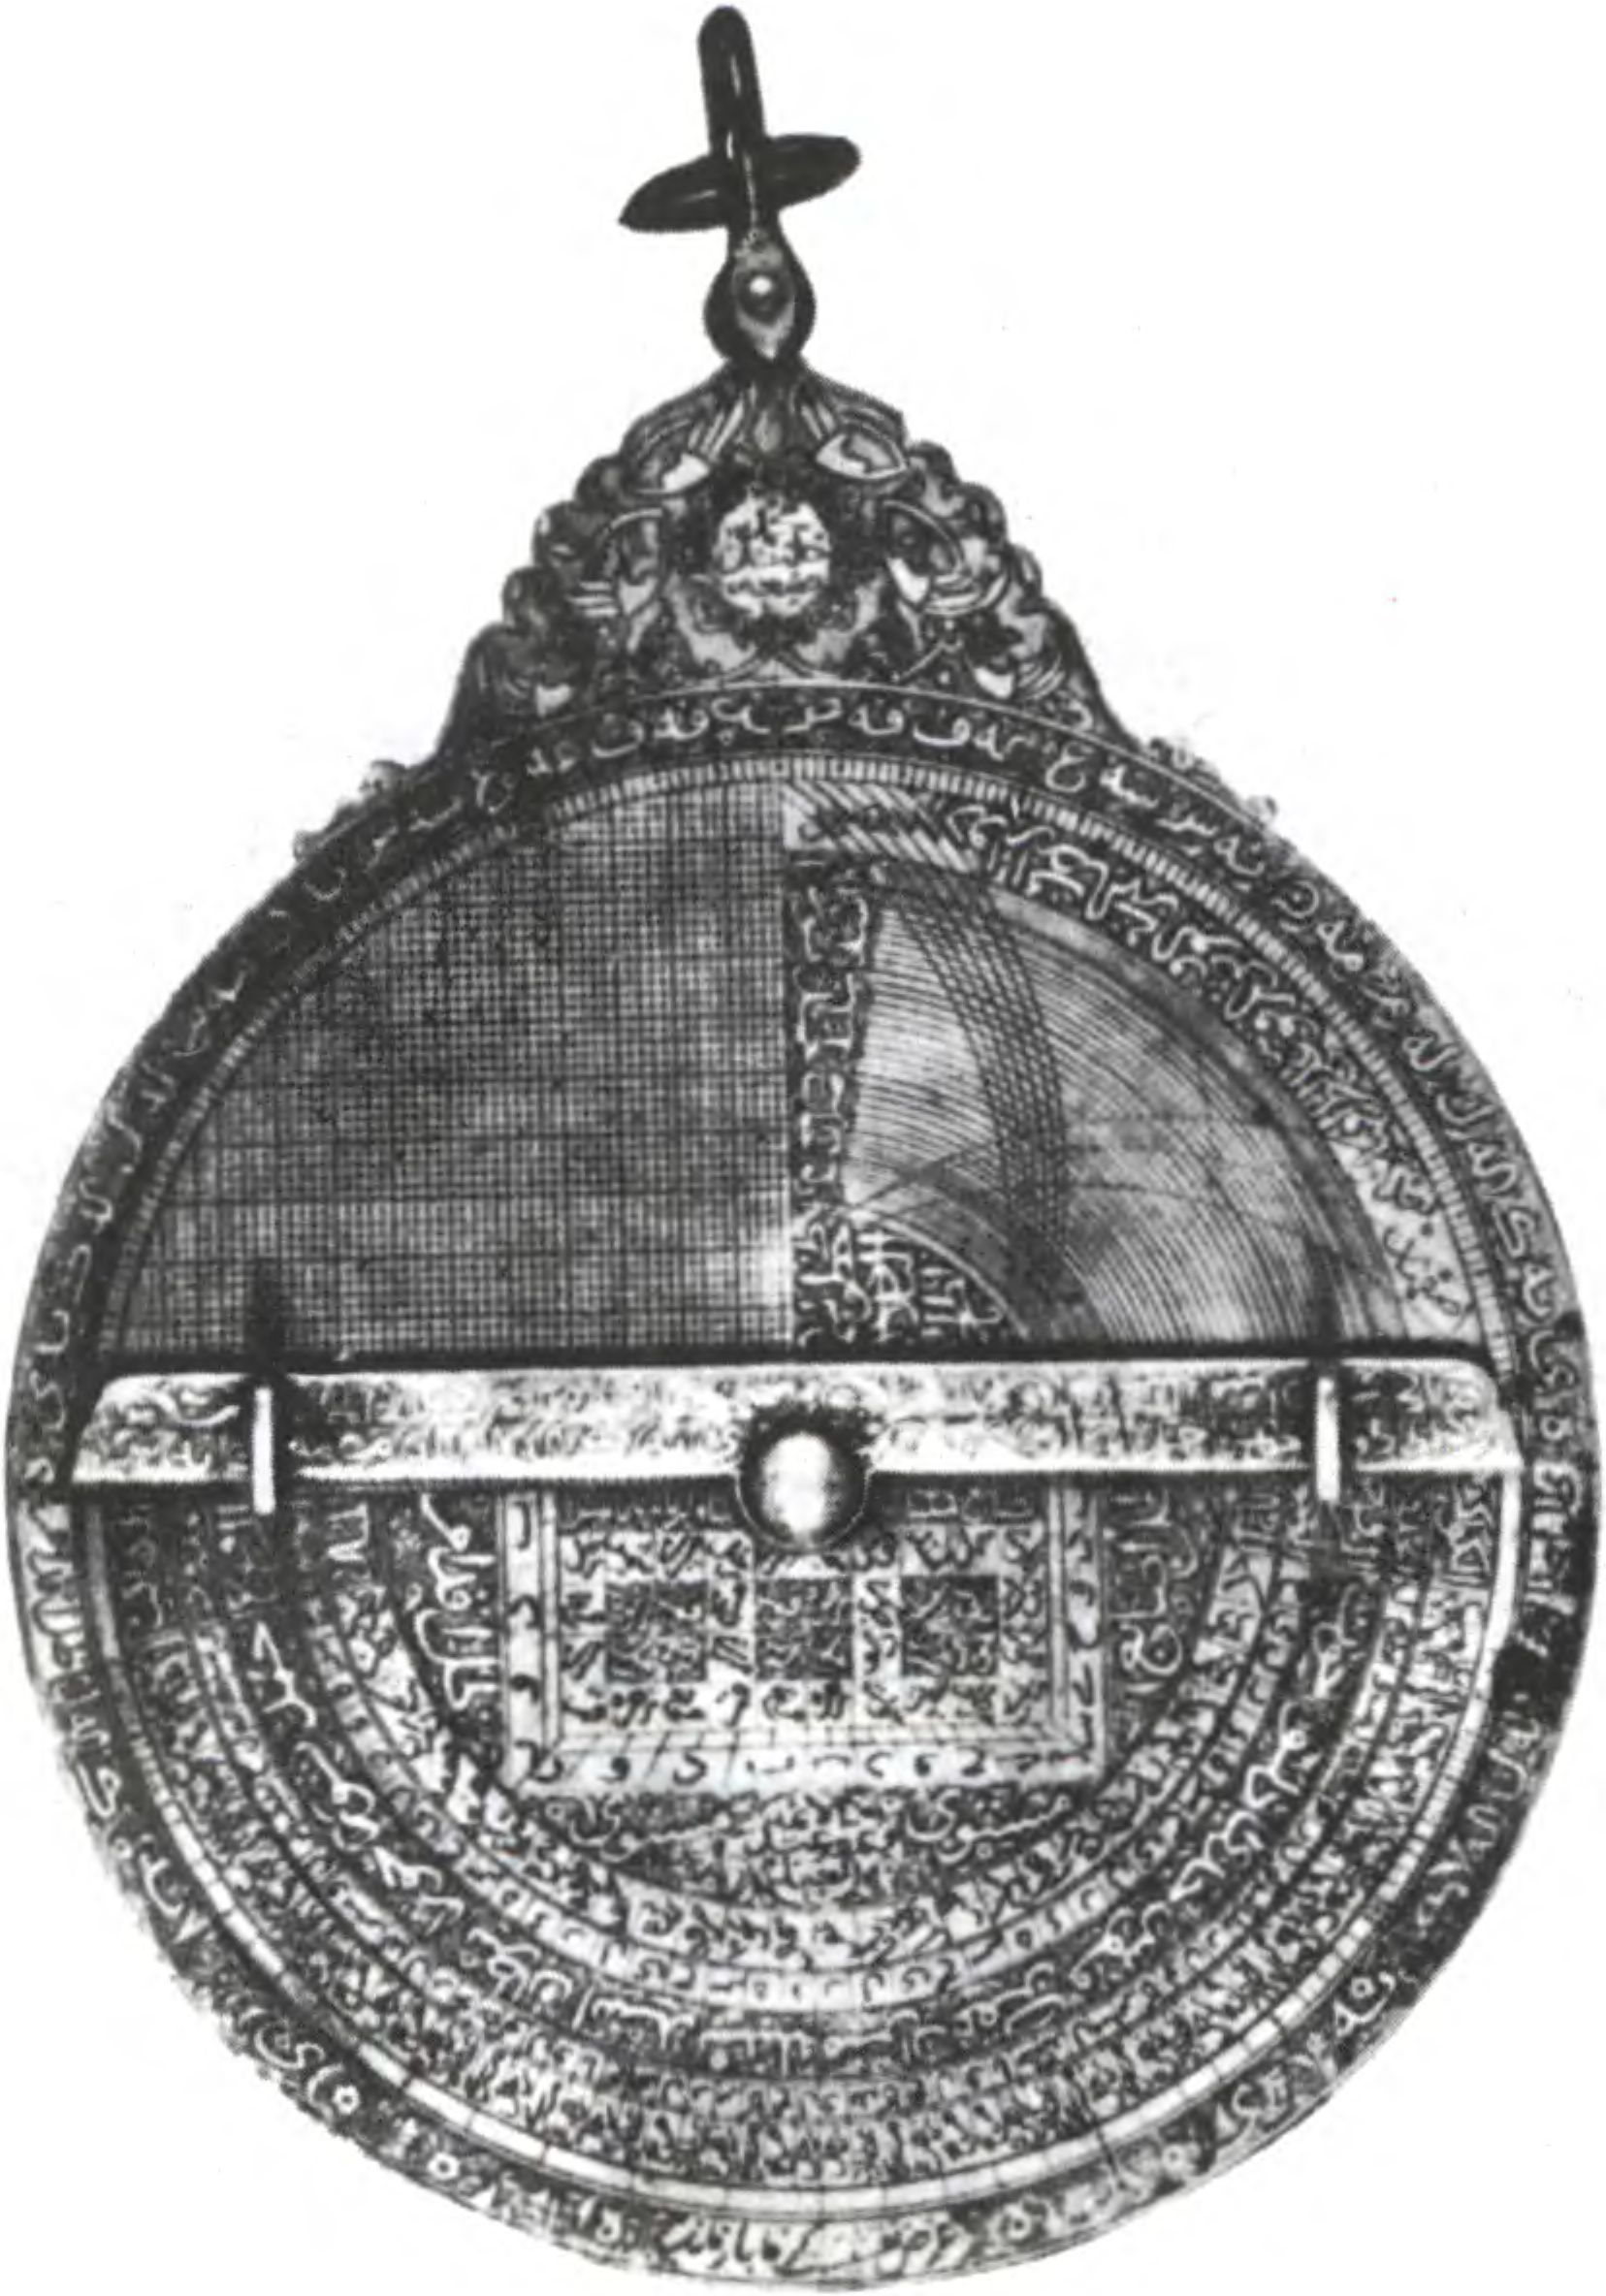 Арабская астролябия XIII века